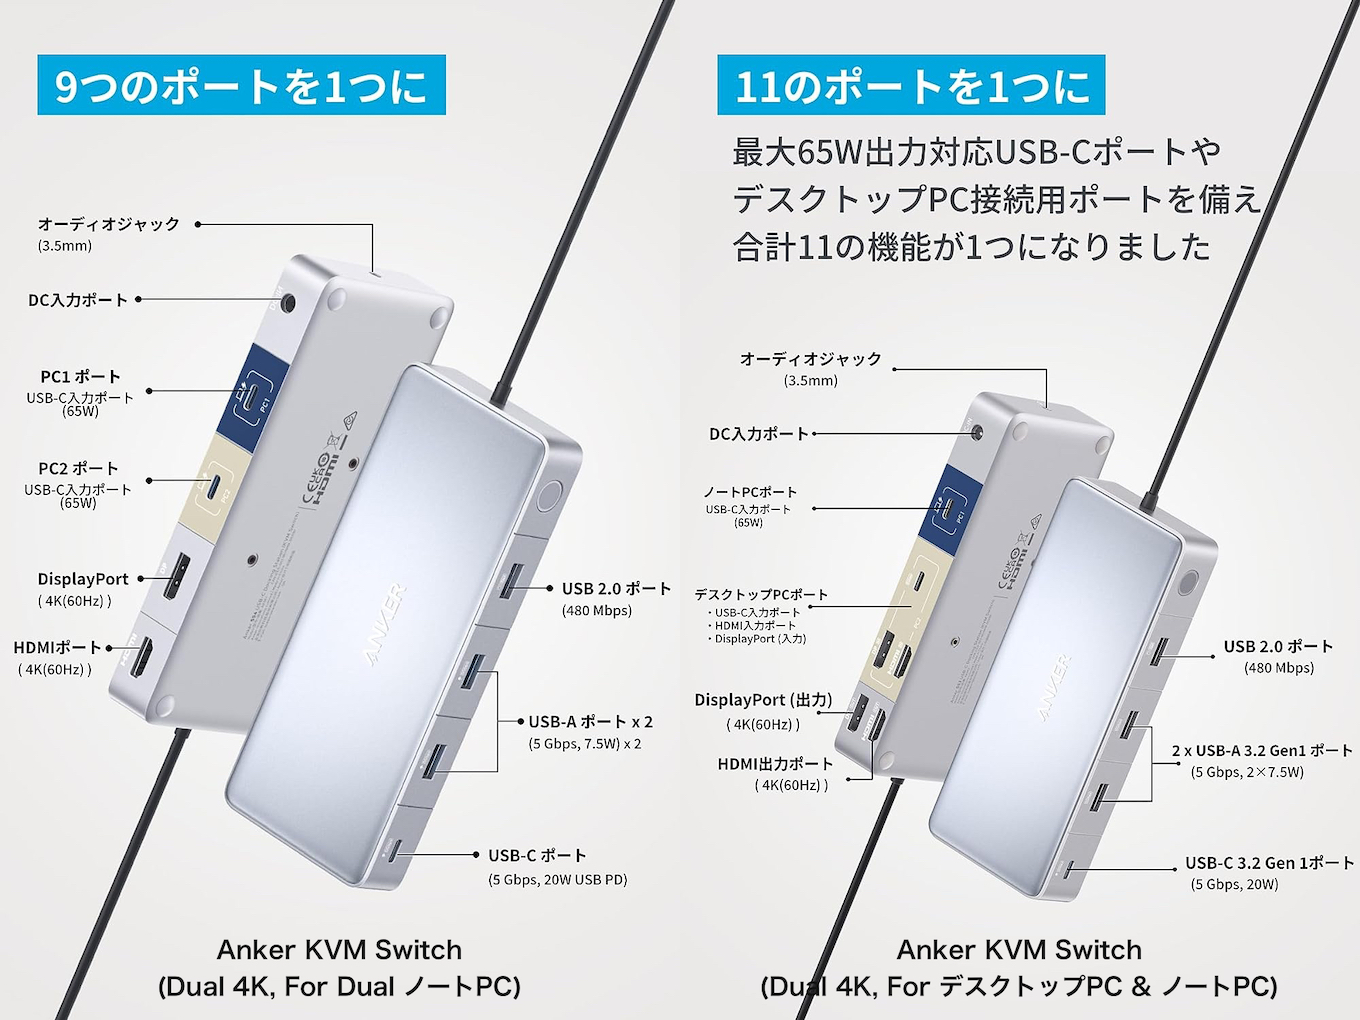 Anker KVM Switch (Dual 4K, For Dual ノートPC)とAnker KVM Switch (Dual 4K, For デスクトップPC & ノートPC)